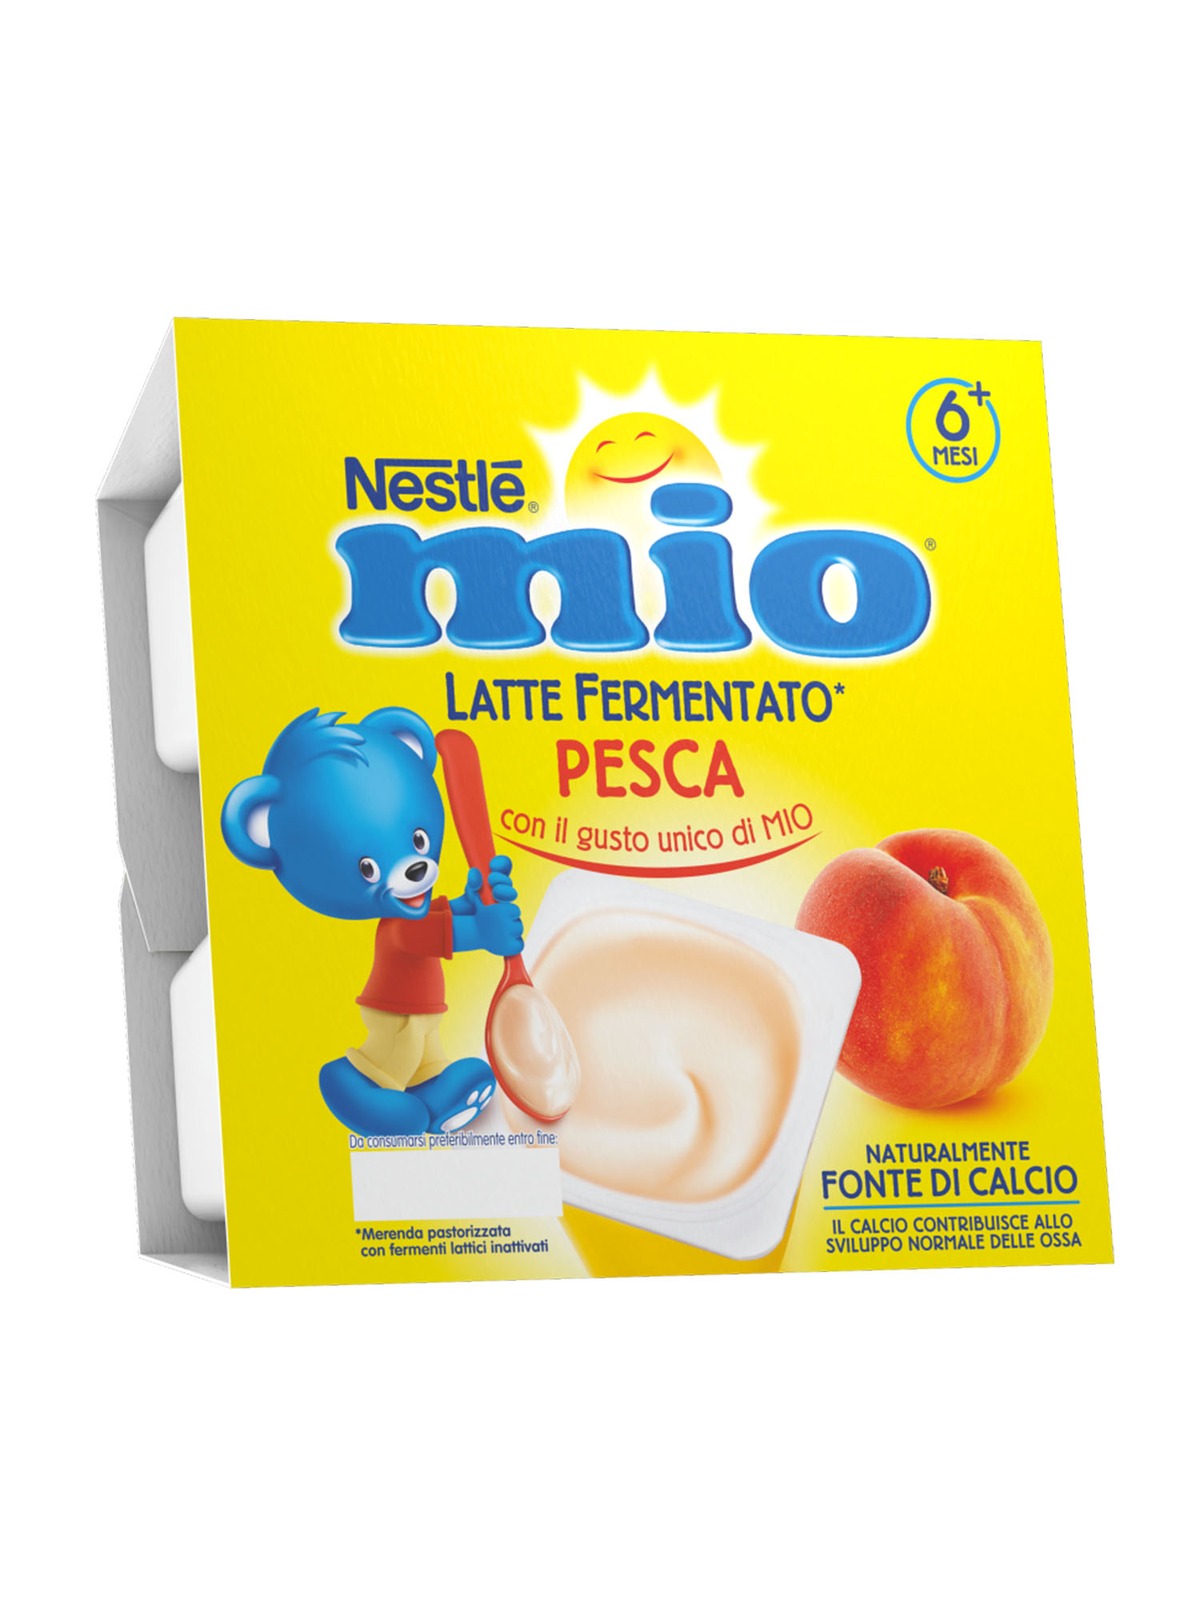 Nestle' mio merenda latte fermentato pesca - Nestlé